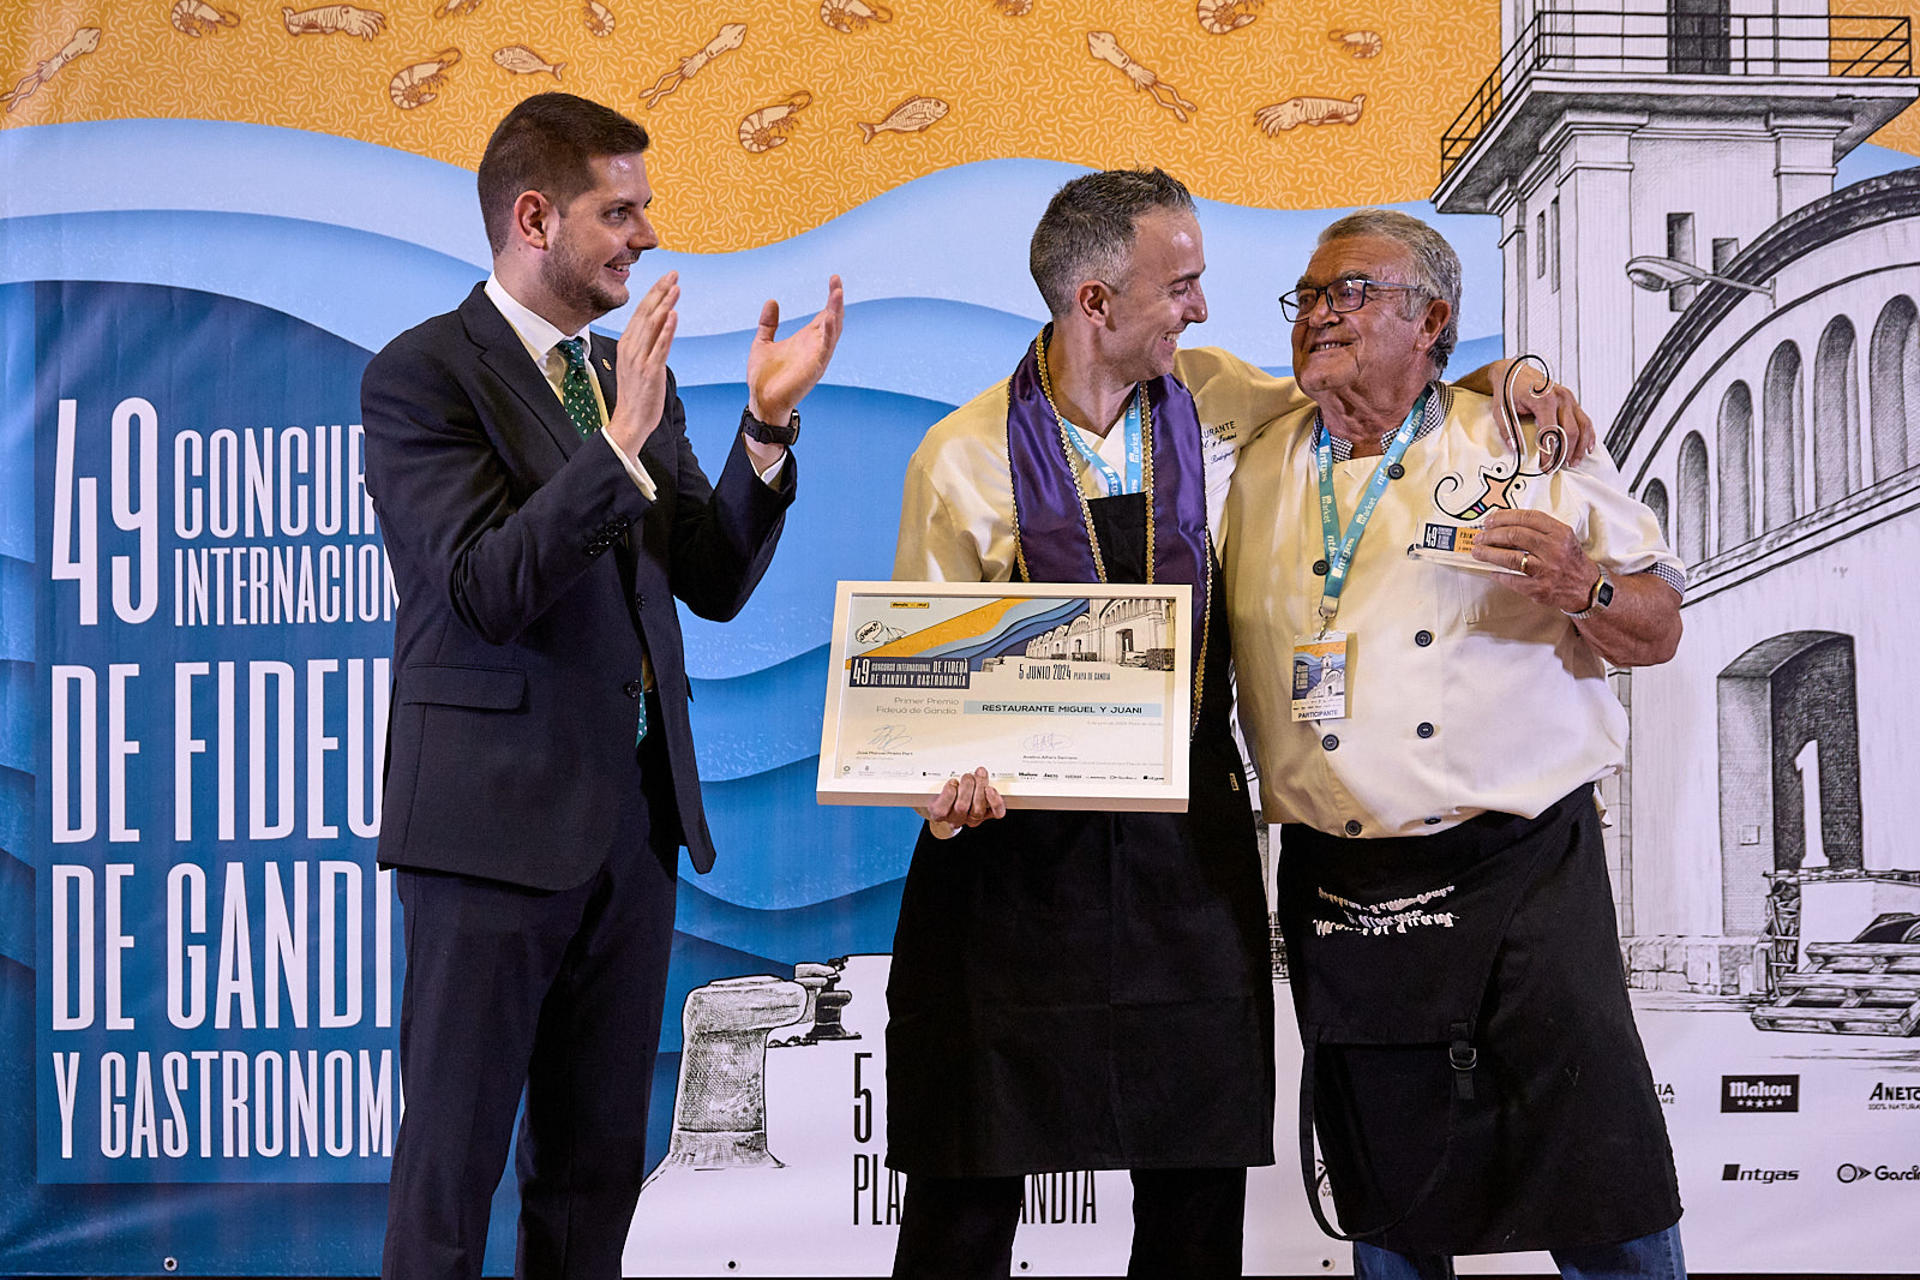 El restaurante Miguel y Juani de l'Alcudia gana el concurso de fideuà de Gandia